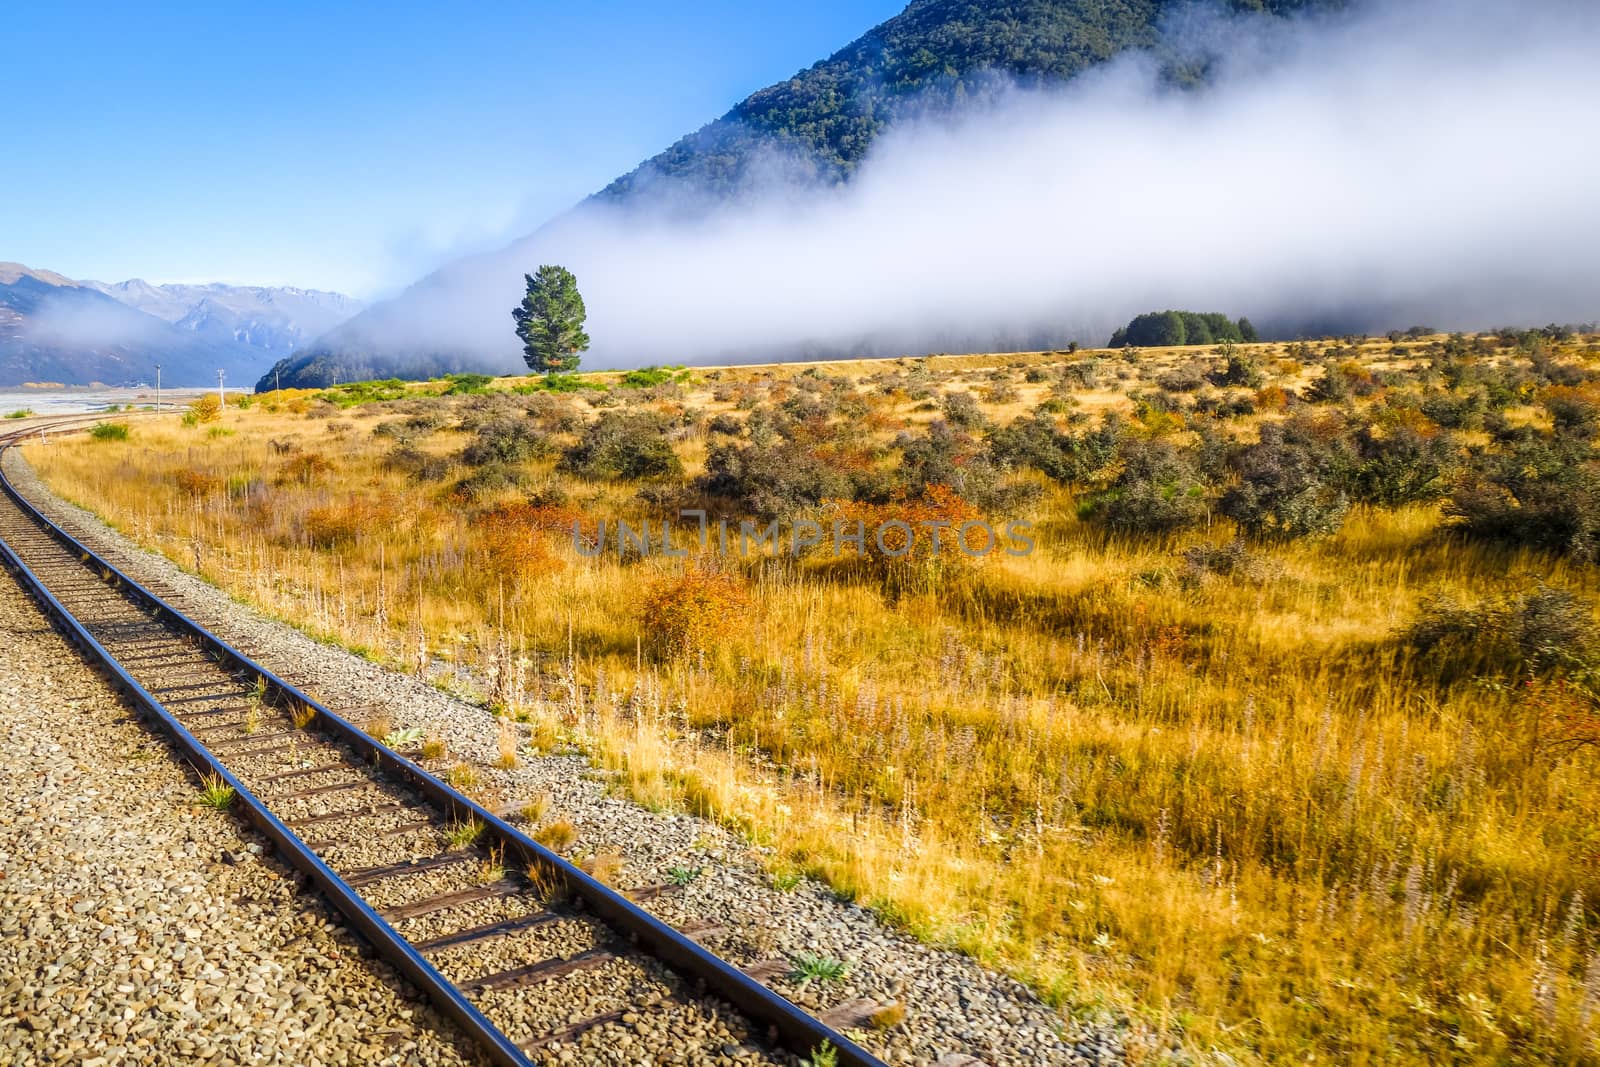 Railway in Mountain fields landscape, New Zealand by daboost